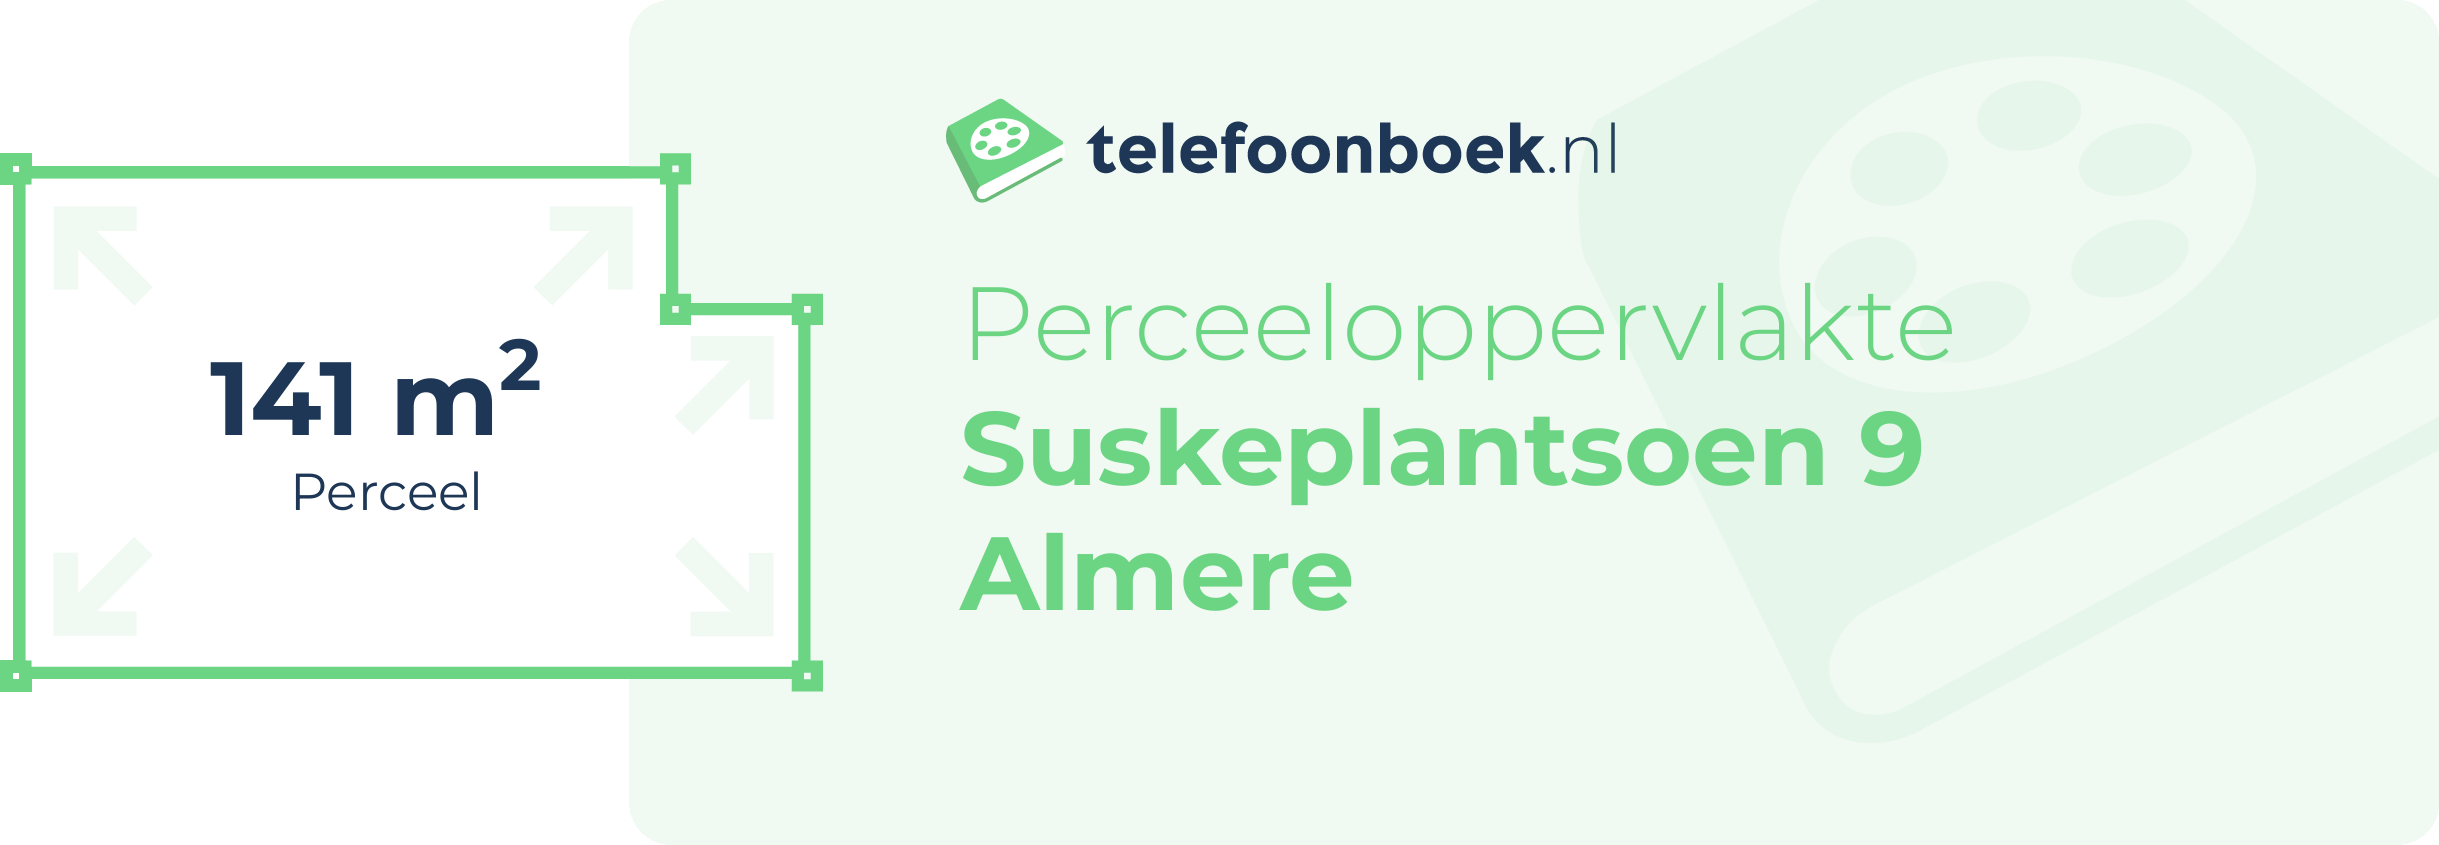 Perceeloppervlakte Suskeplantsoen 9 Almere